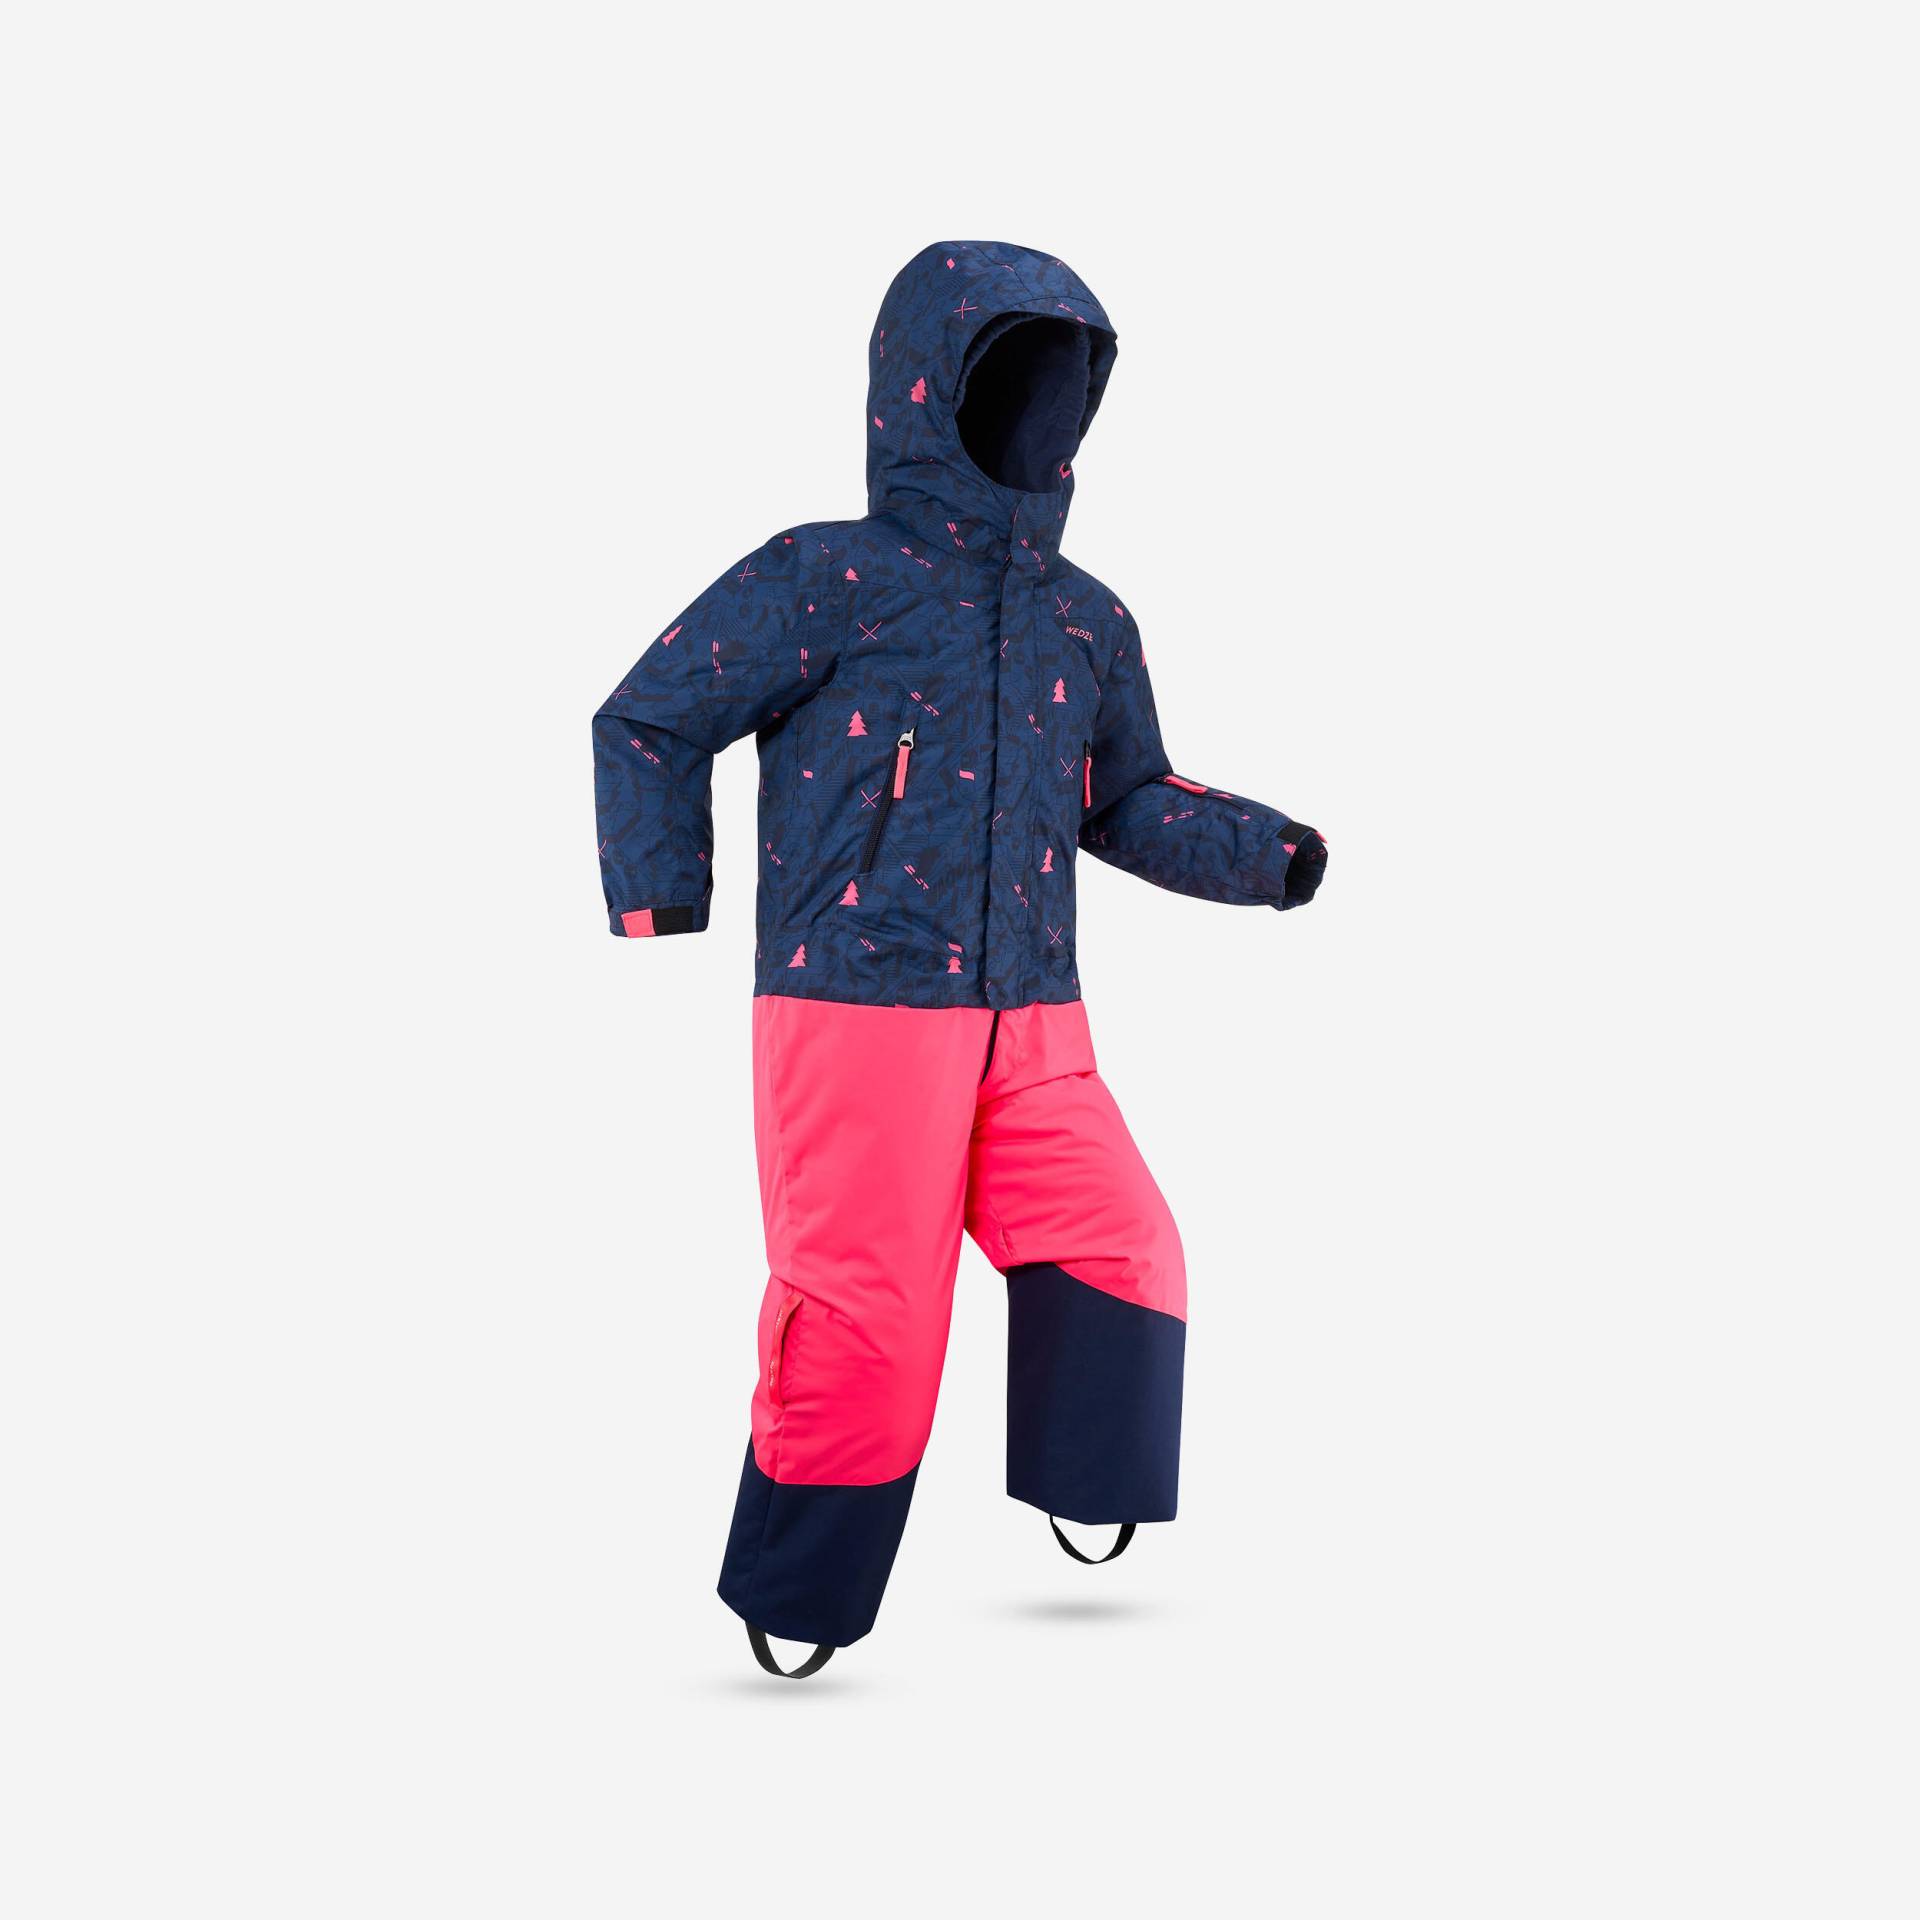 Schneenanzug Skianzug Kinder warm wasserdicht - PNF500 rosa/blau von WEDZE